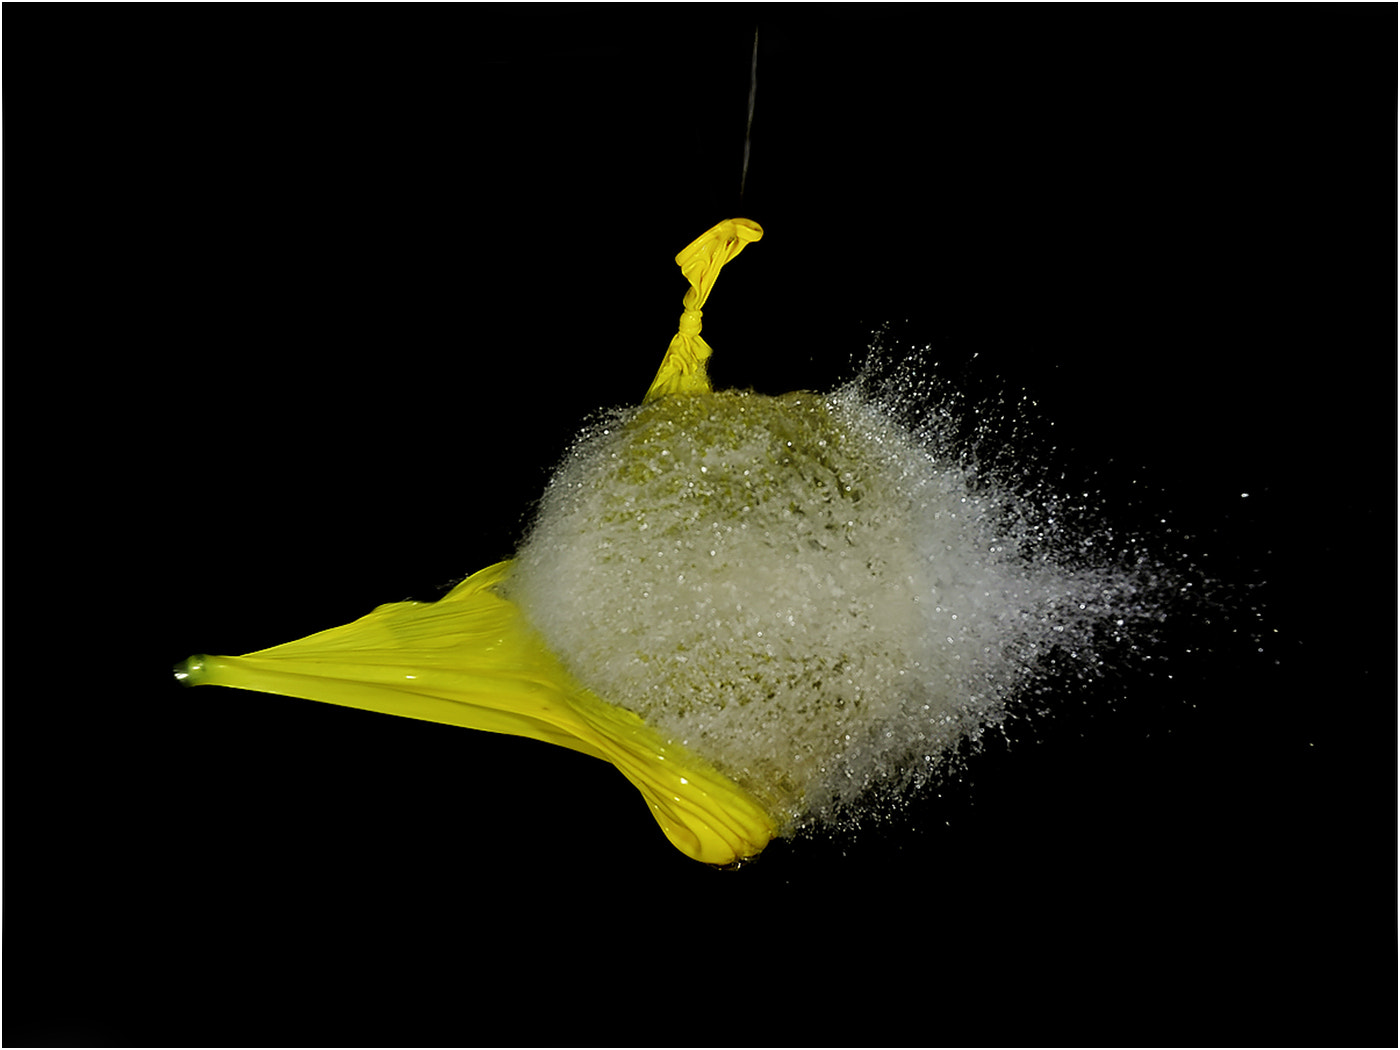 Nikon D3S sample photo. Balloon burst photography